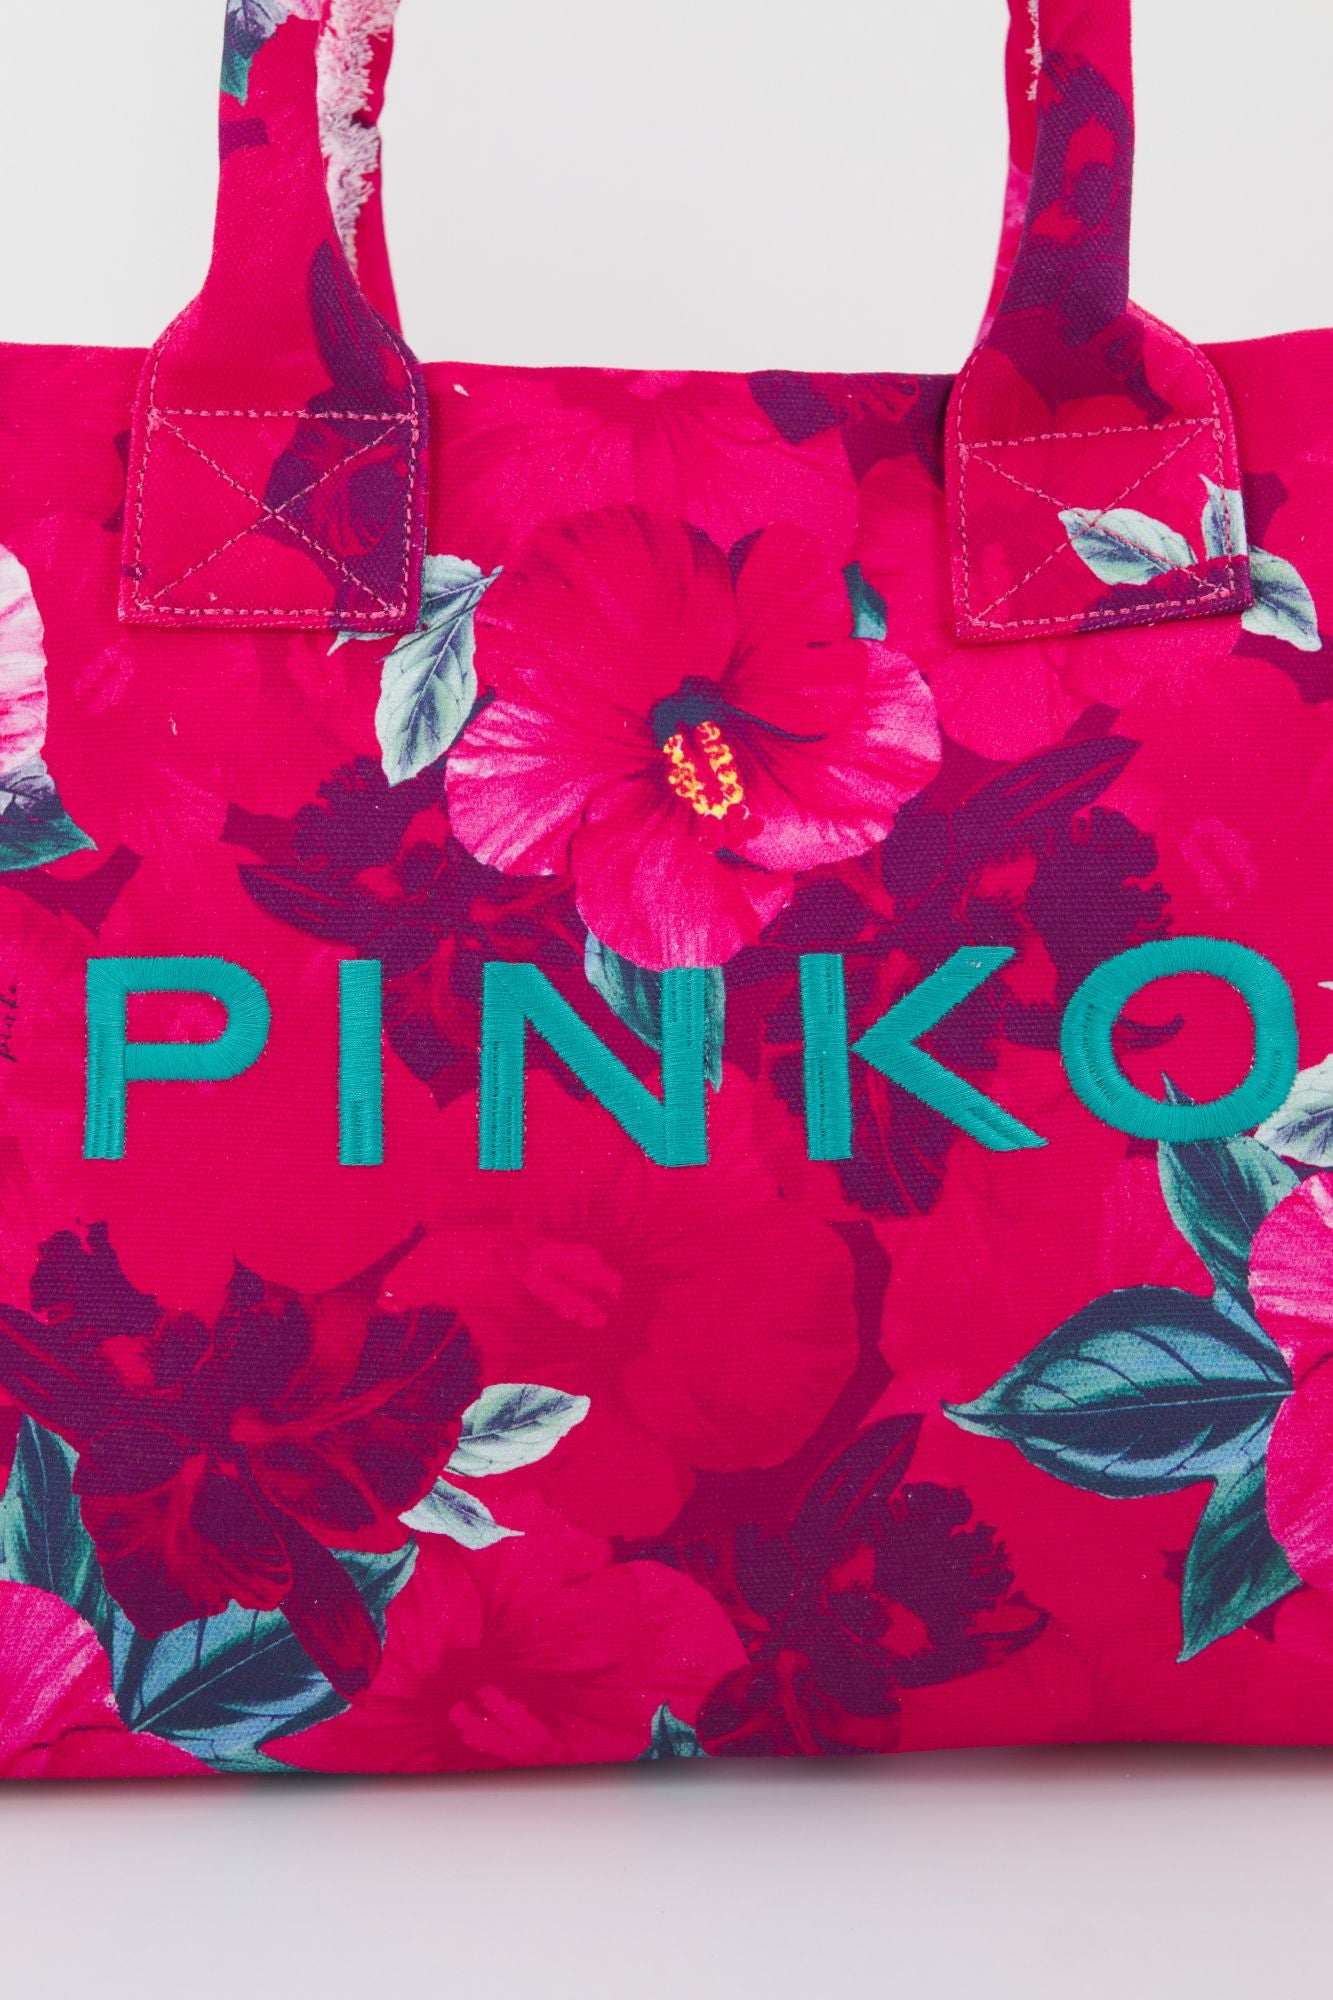 PINKO  A0PZ BEACH SHOPPING en color ROSA (4)